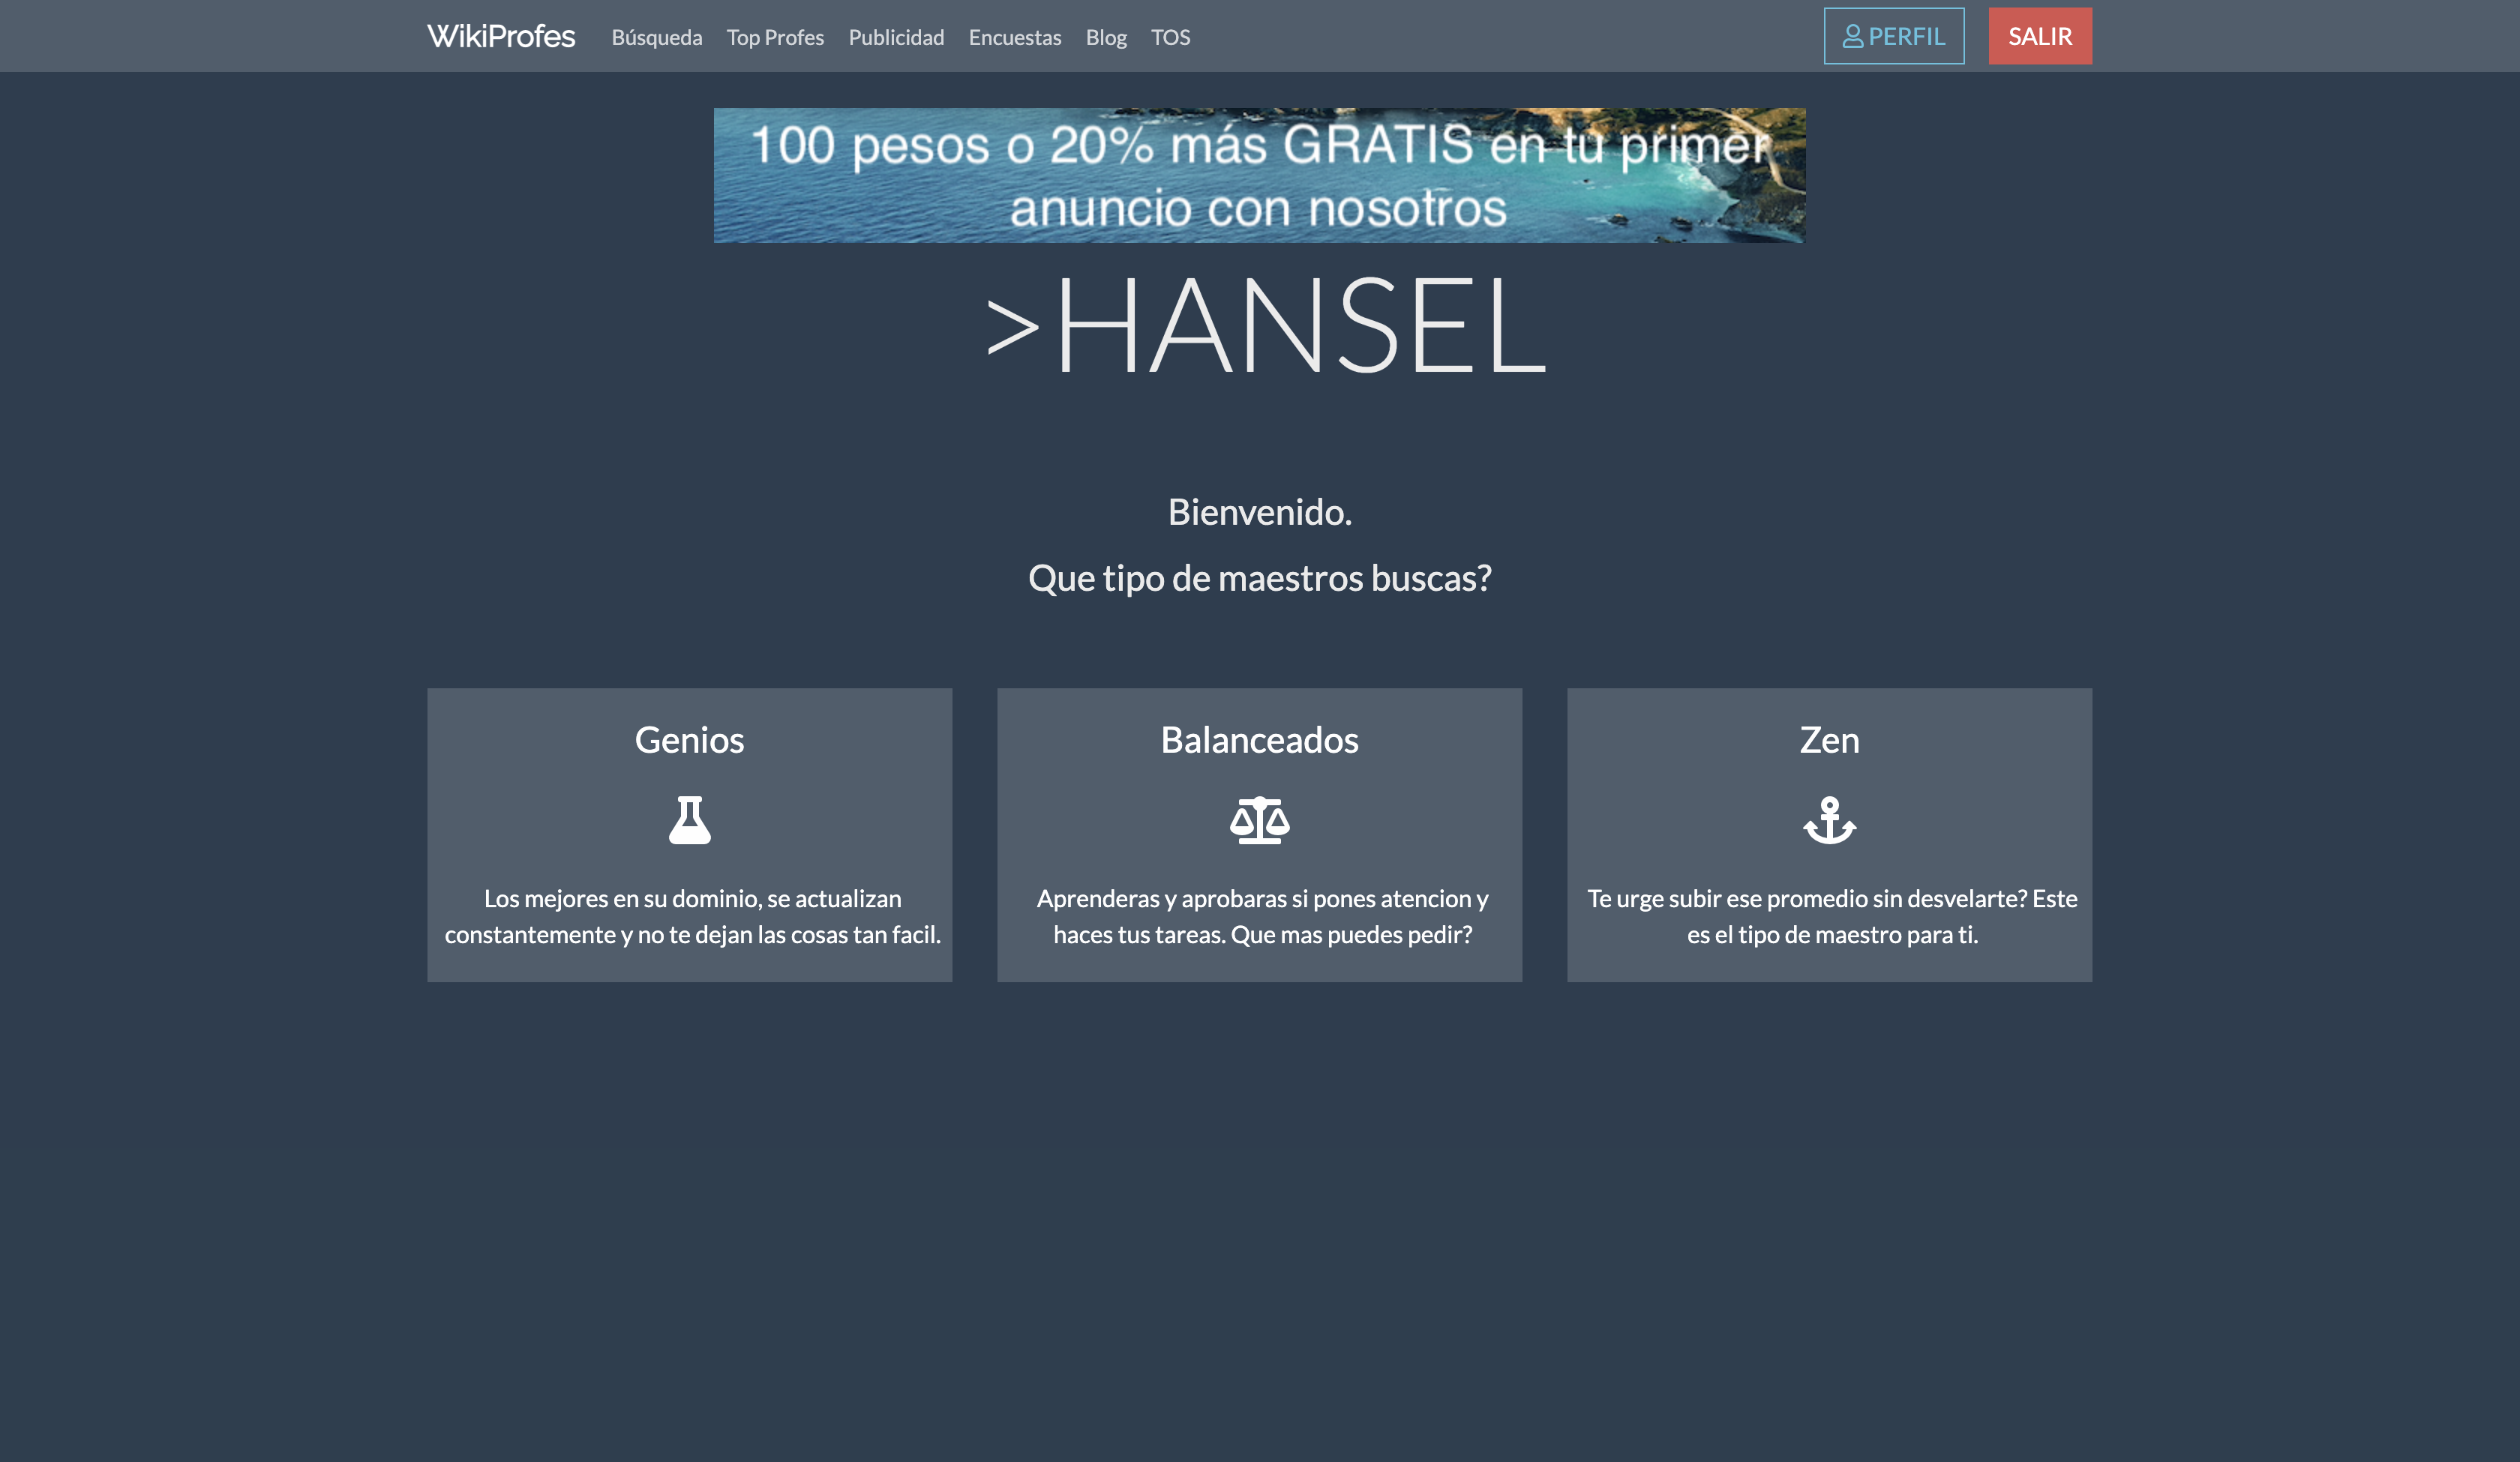 hansel